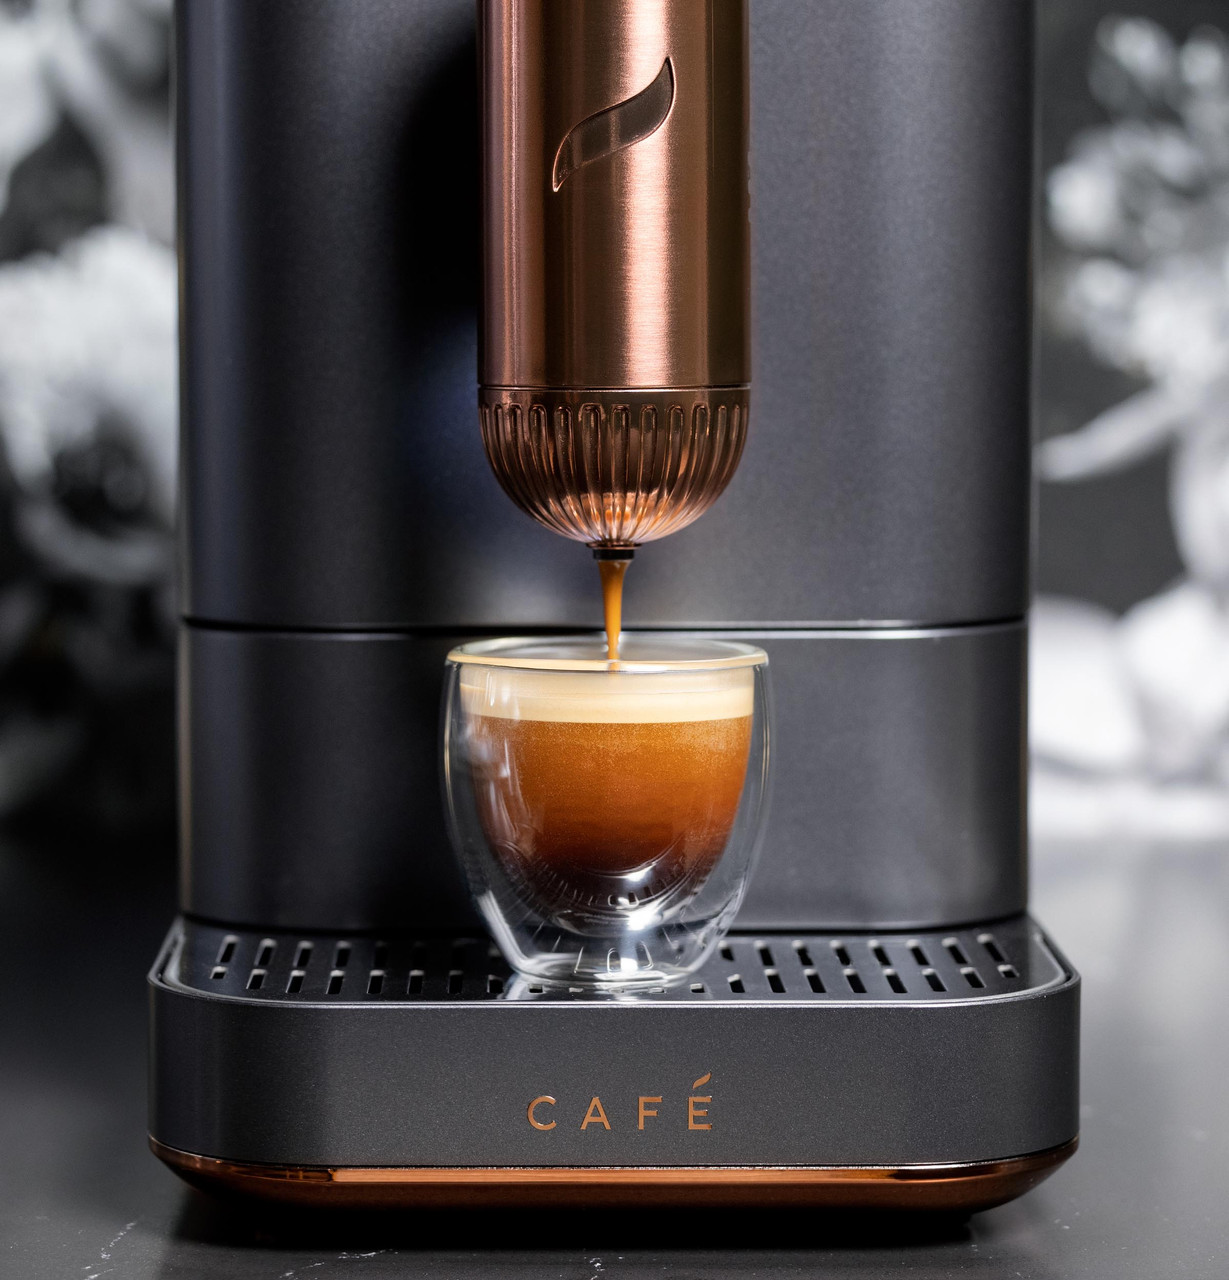 Breville Vertuo Next Coffee and Espresso Maker in Light Gray plus